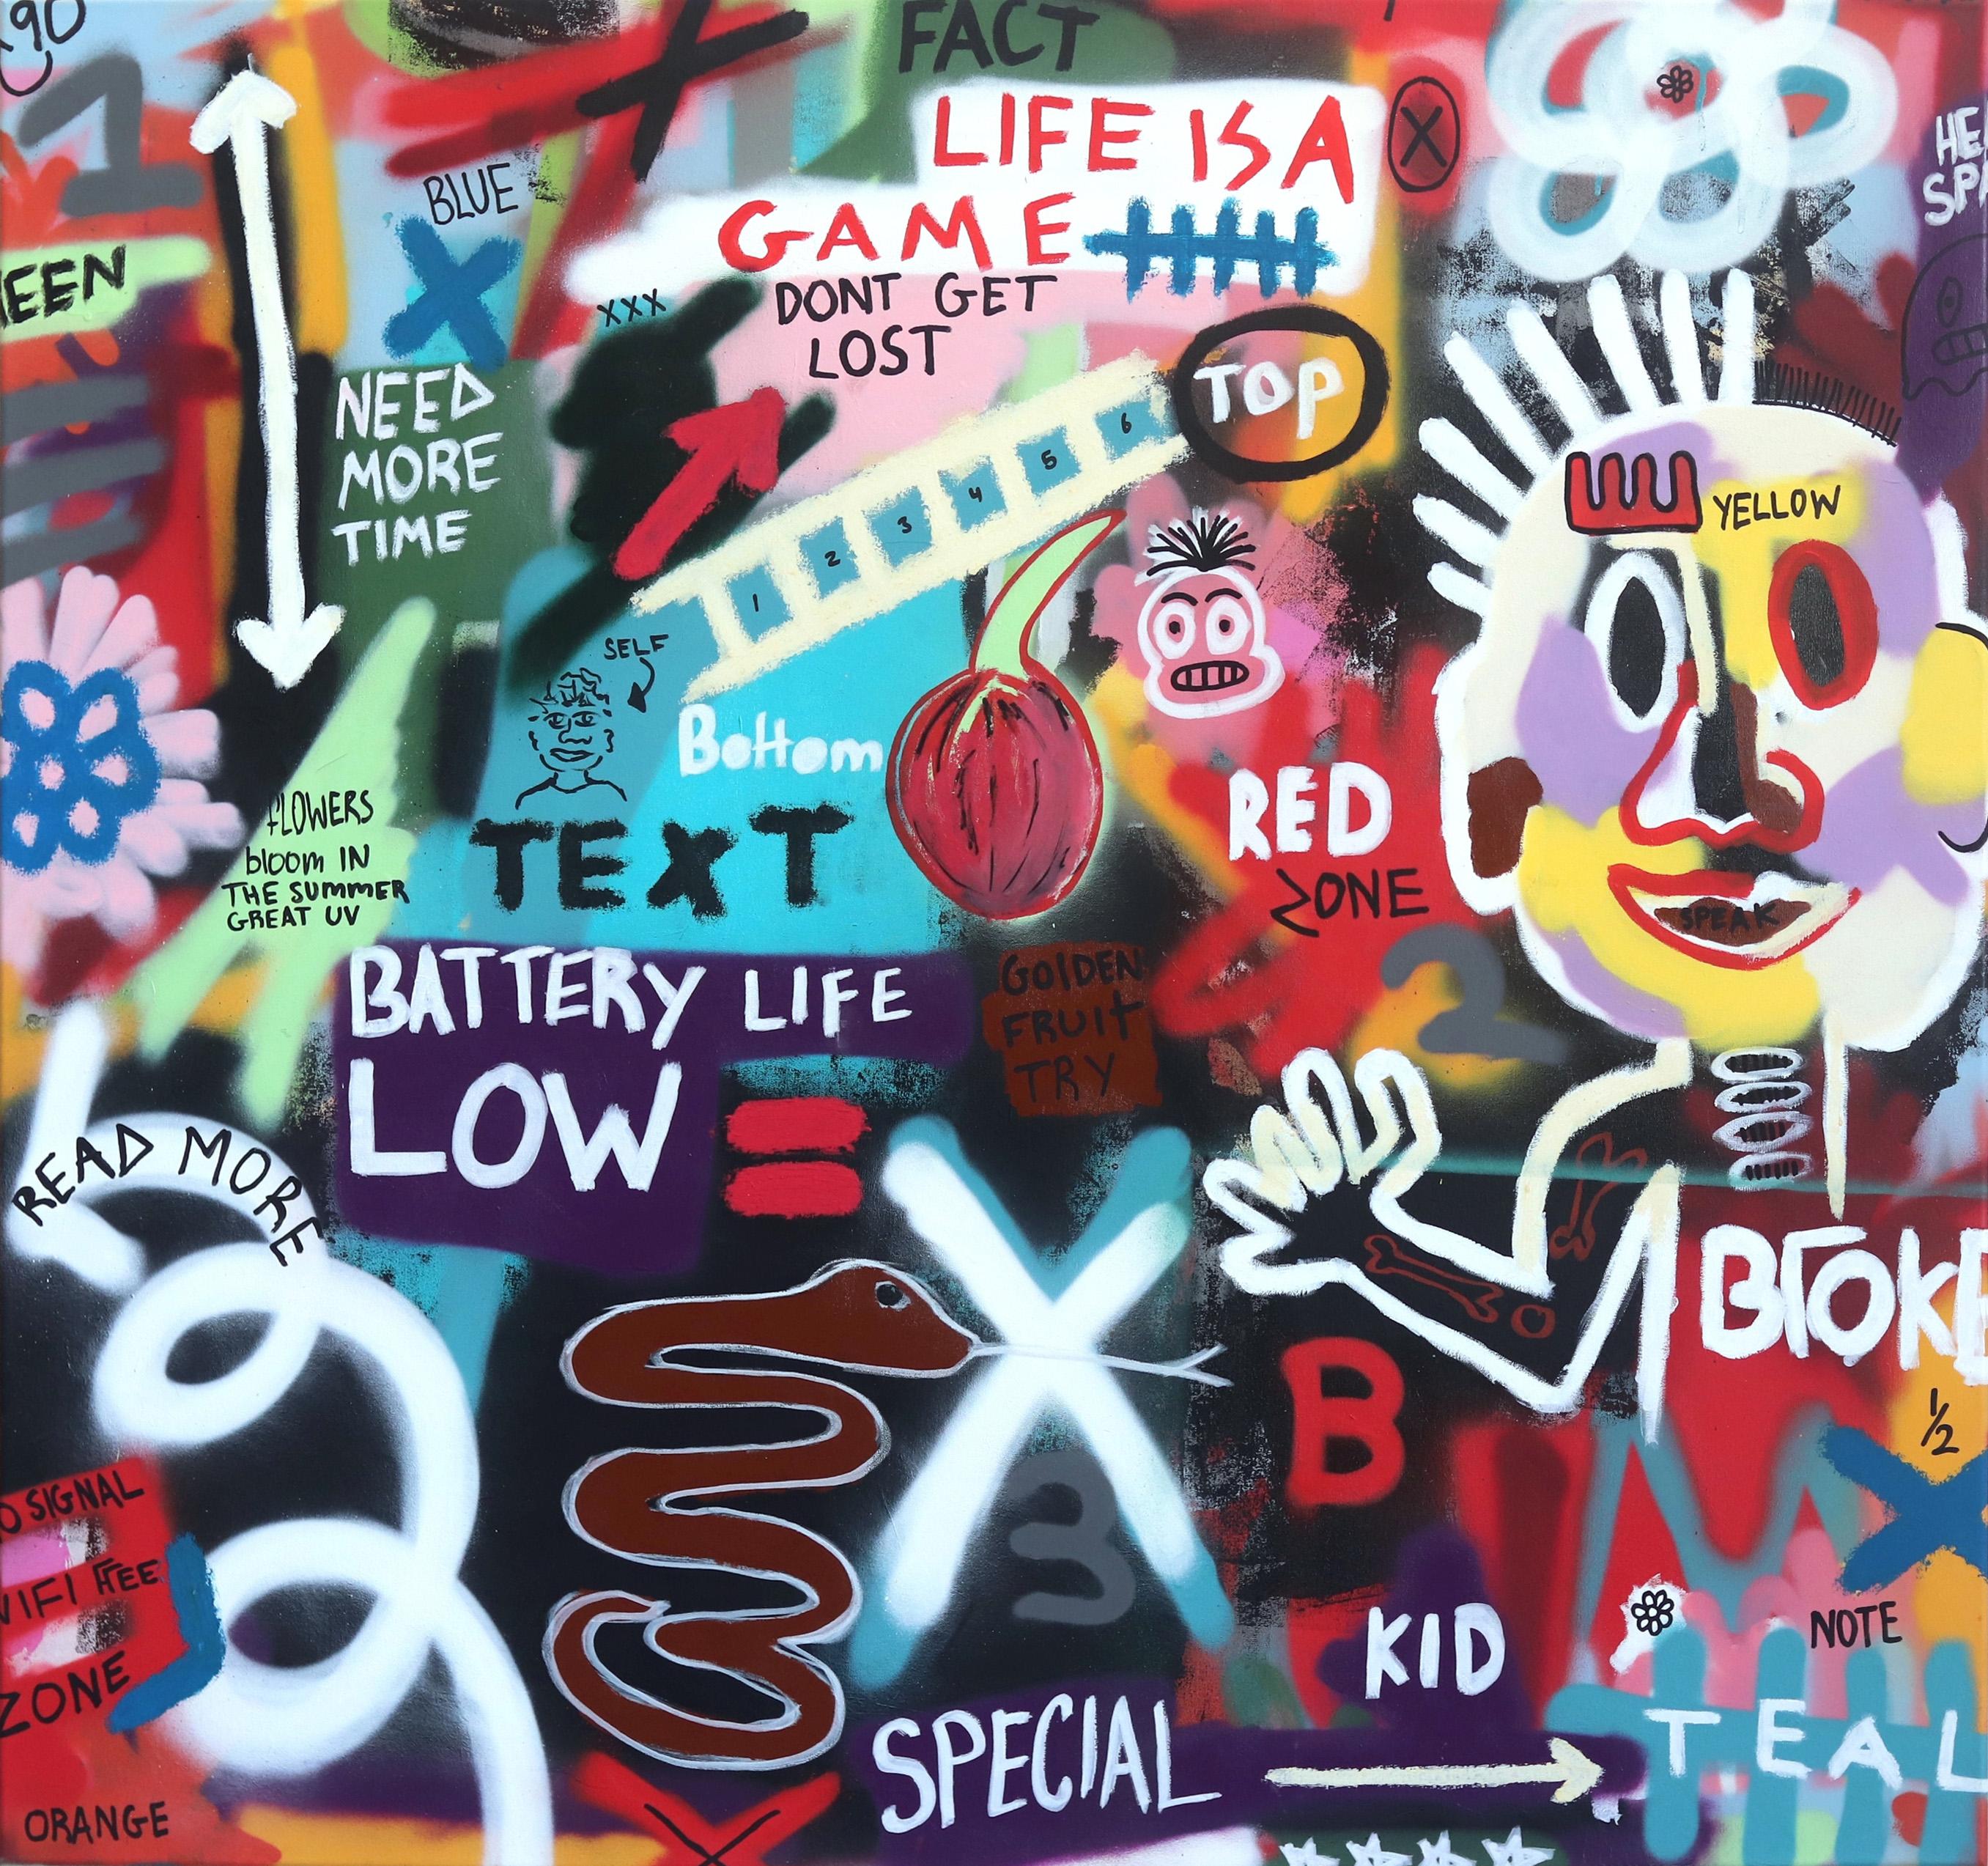 Das Leben ist ein Spiel - große bunte zeitgenössische Street Art Malerei Figuren Text